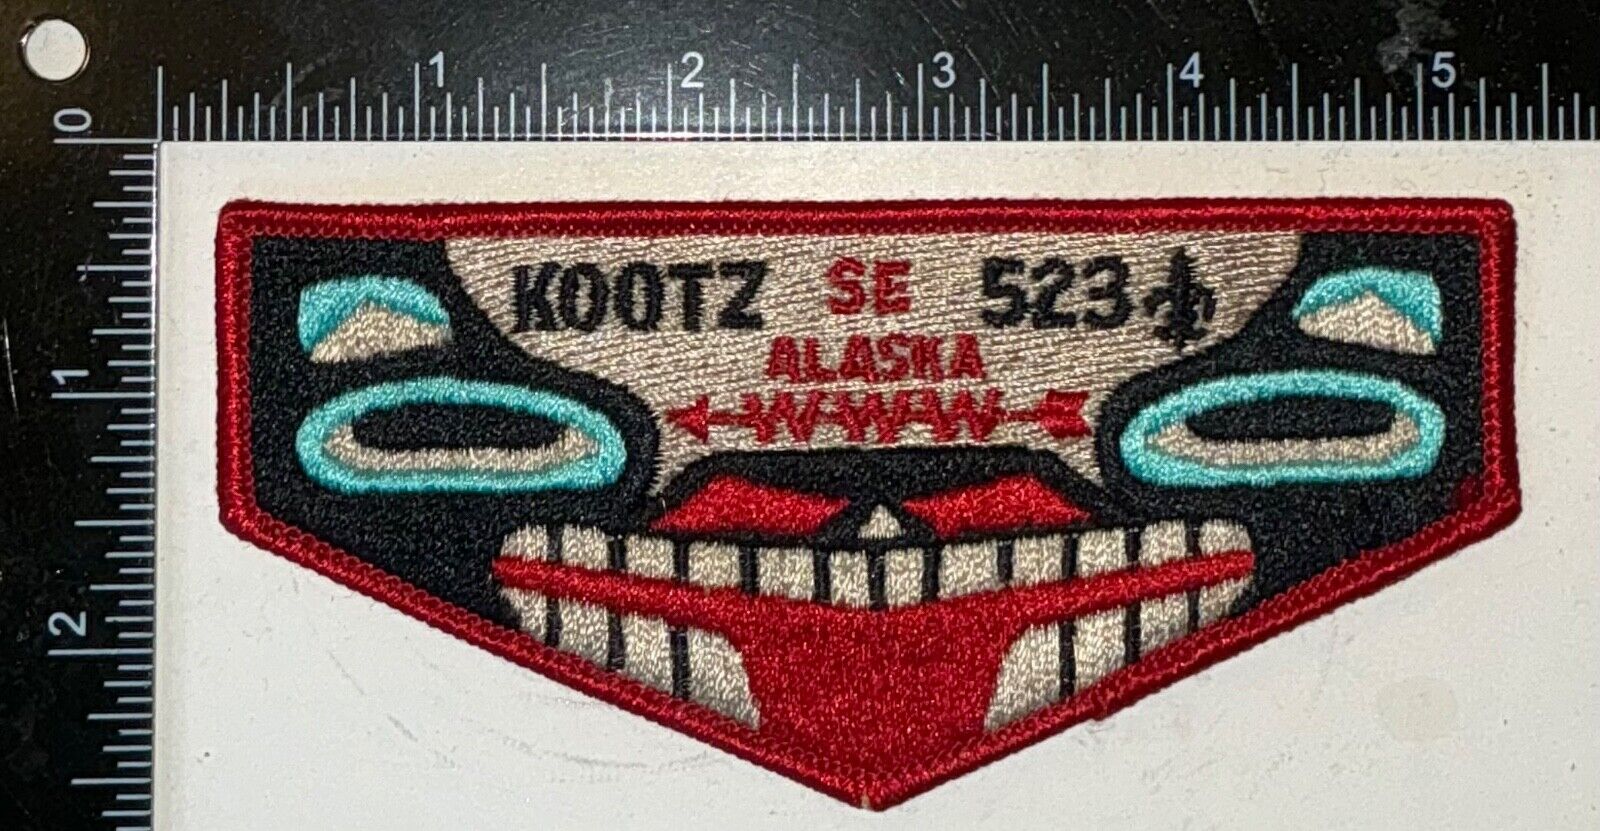 MERGED KOOTZ OA 523 549 BSA WESTERN ALASKA COUNCIL PATCH 3-D TOTEM FLAP MINT